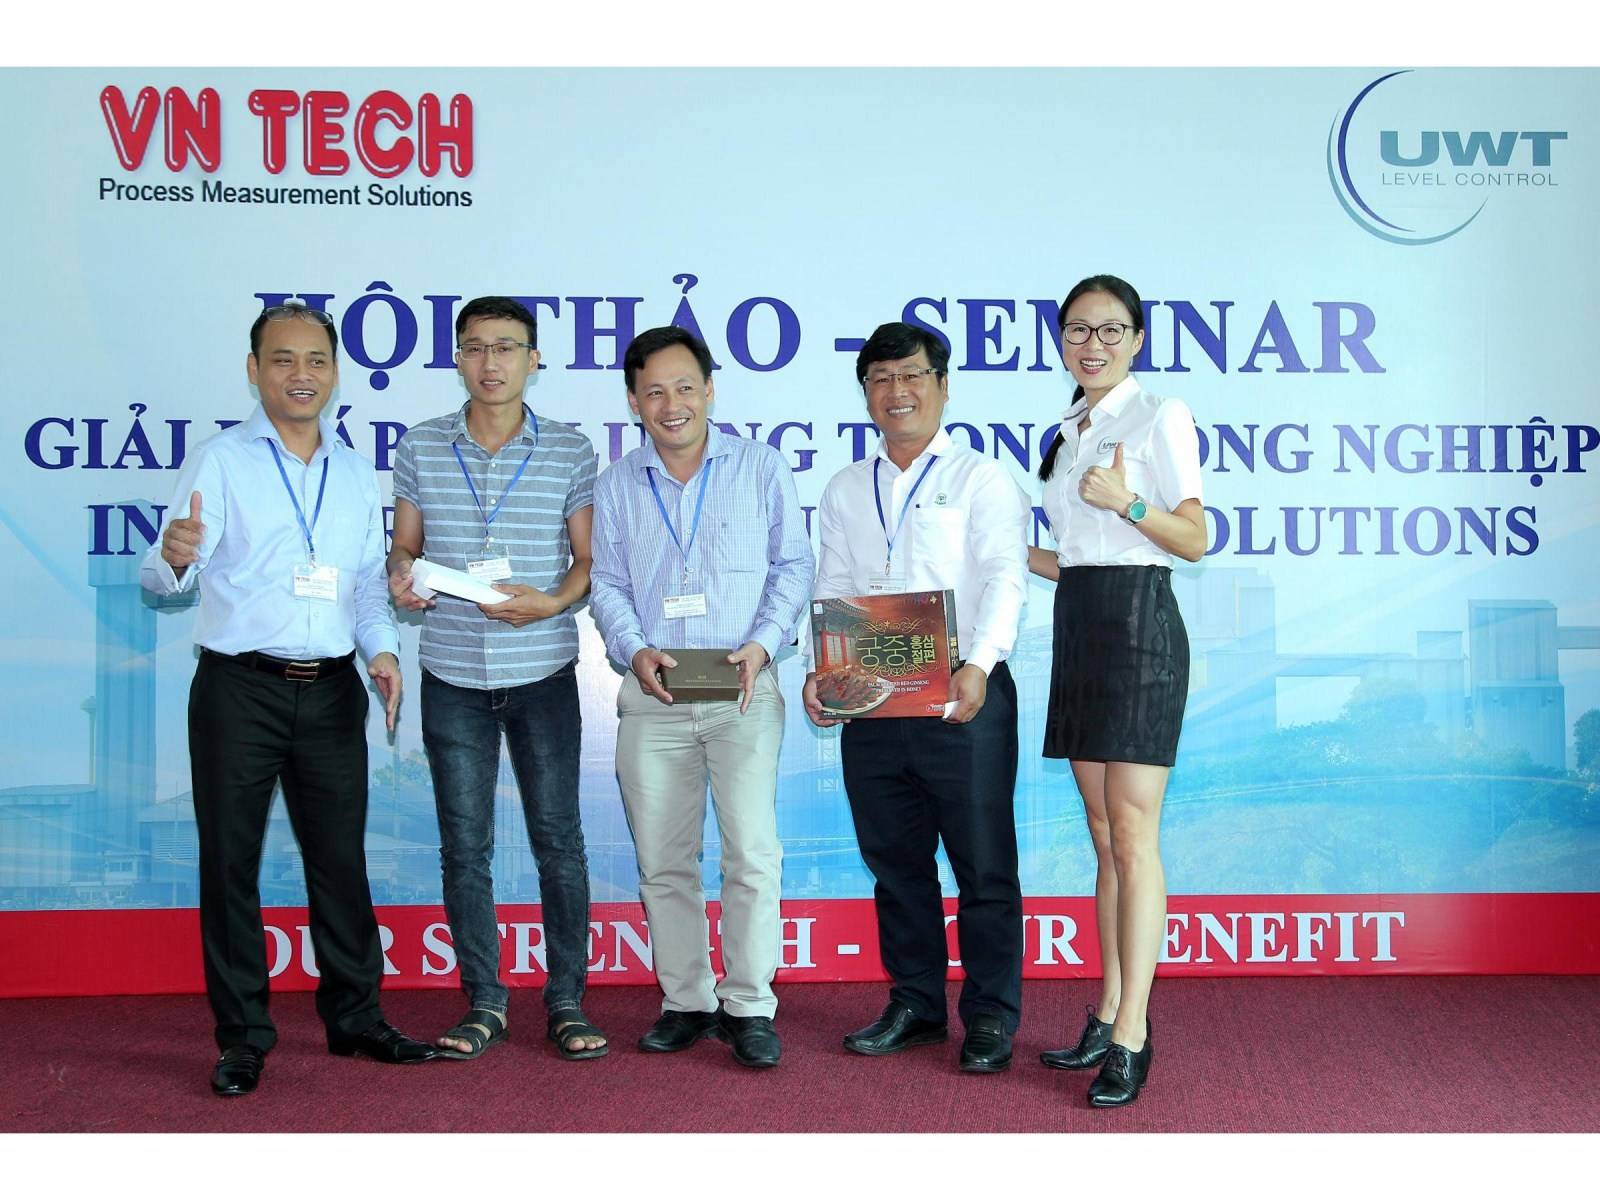 UWT Partner - Viet Nhat Industrial Equipment Co., Ltd.